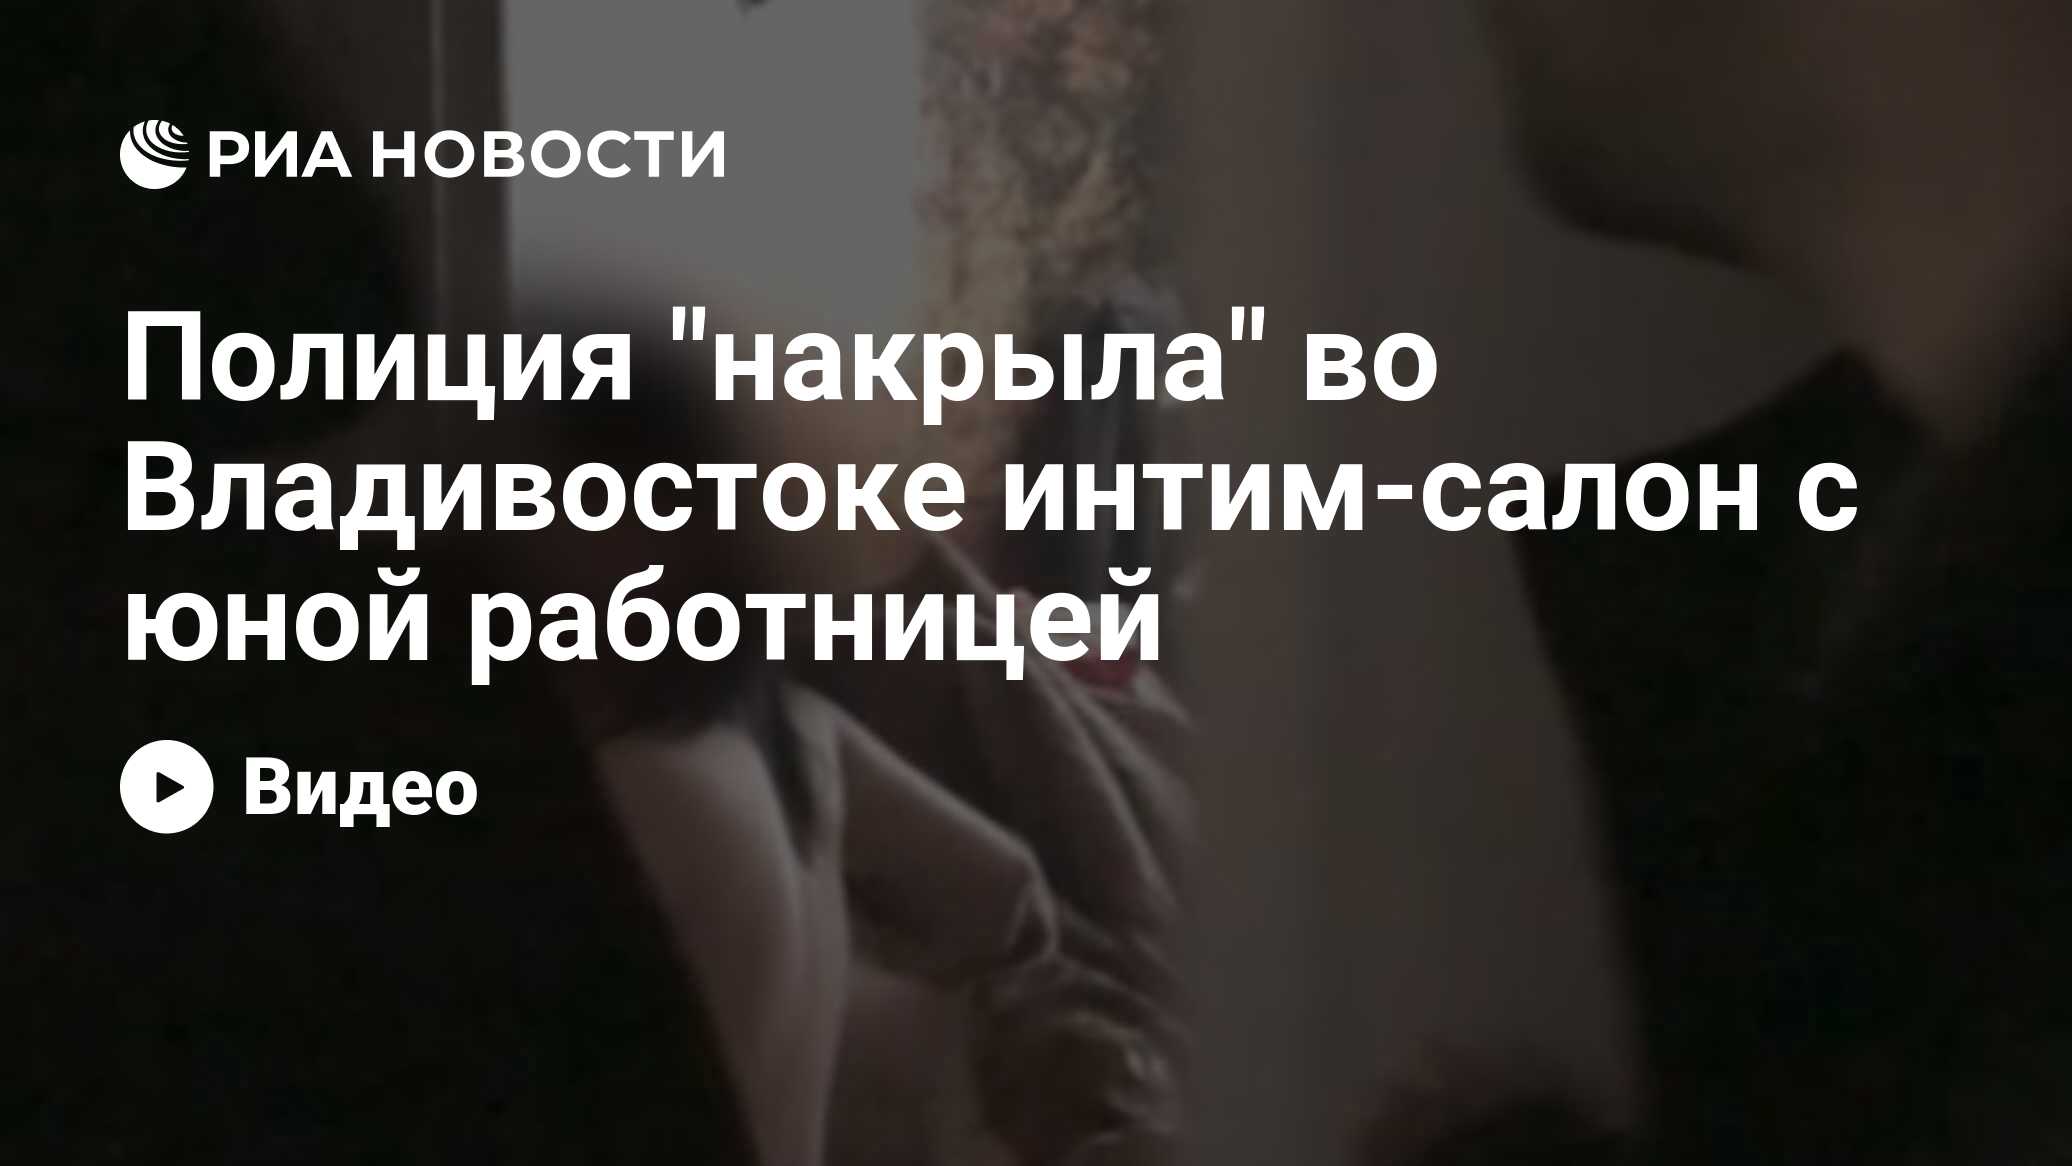 В Ростове накрыли сеть интим-салонов и их 50-летнюю хозяйку